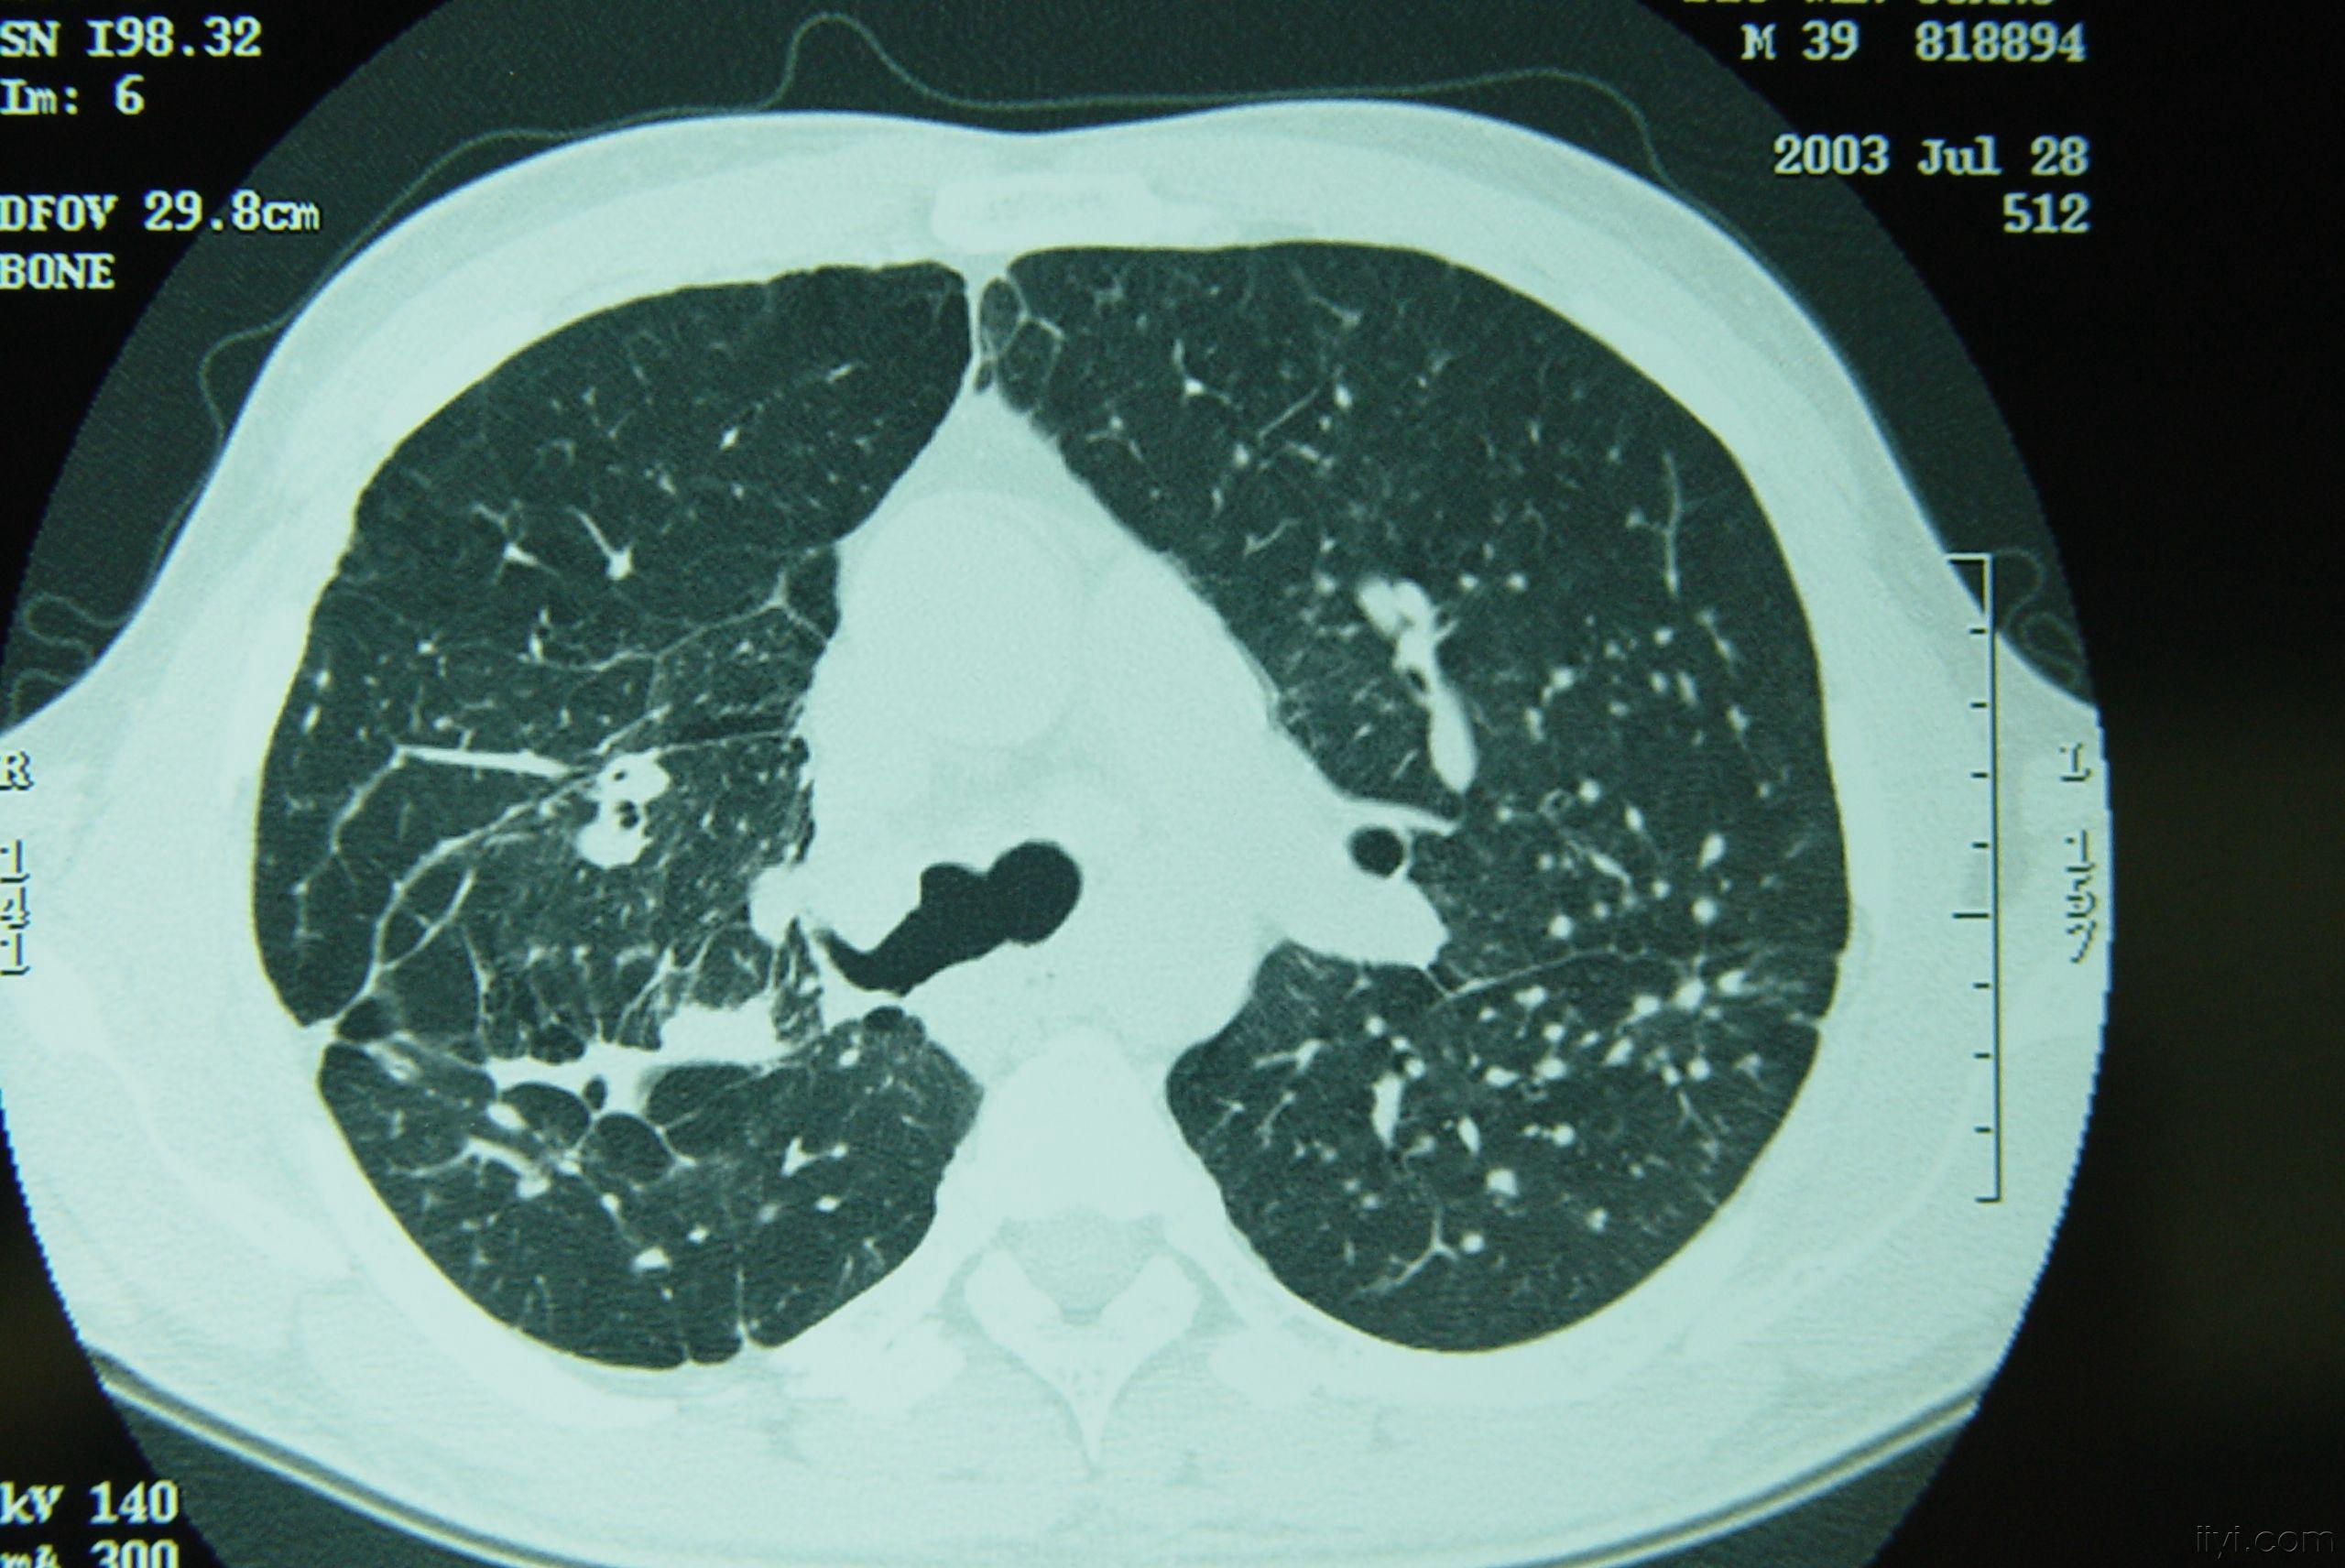 矽肺图片三期图片